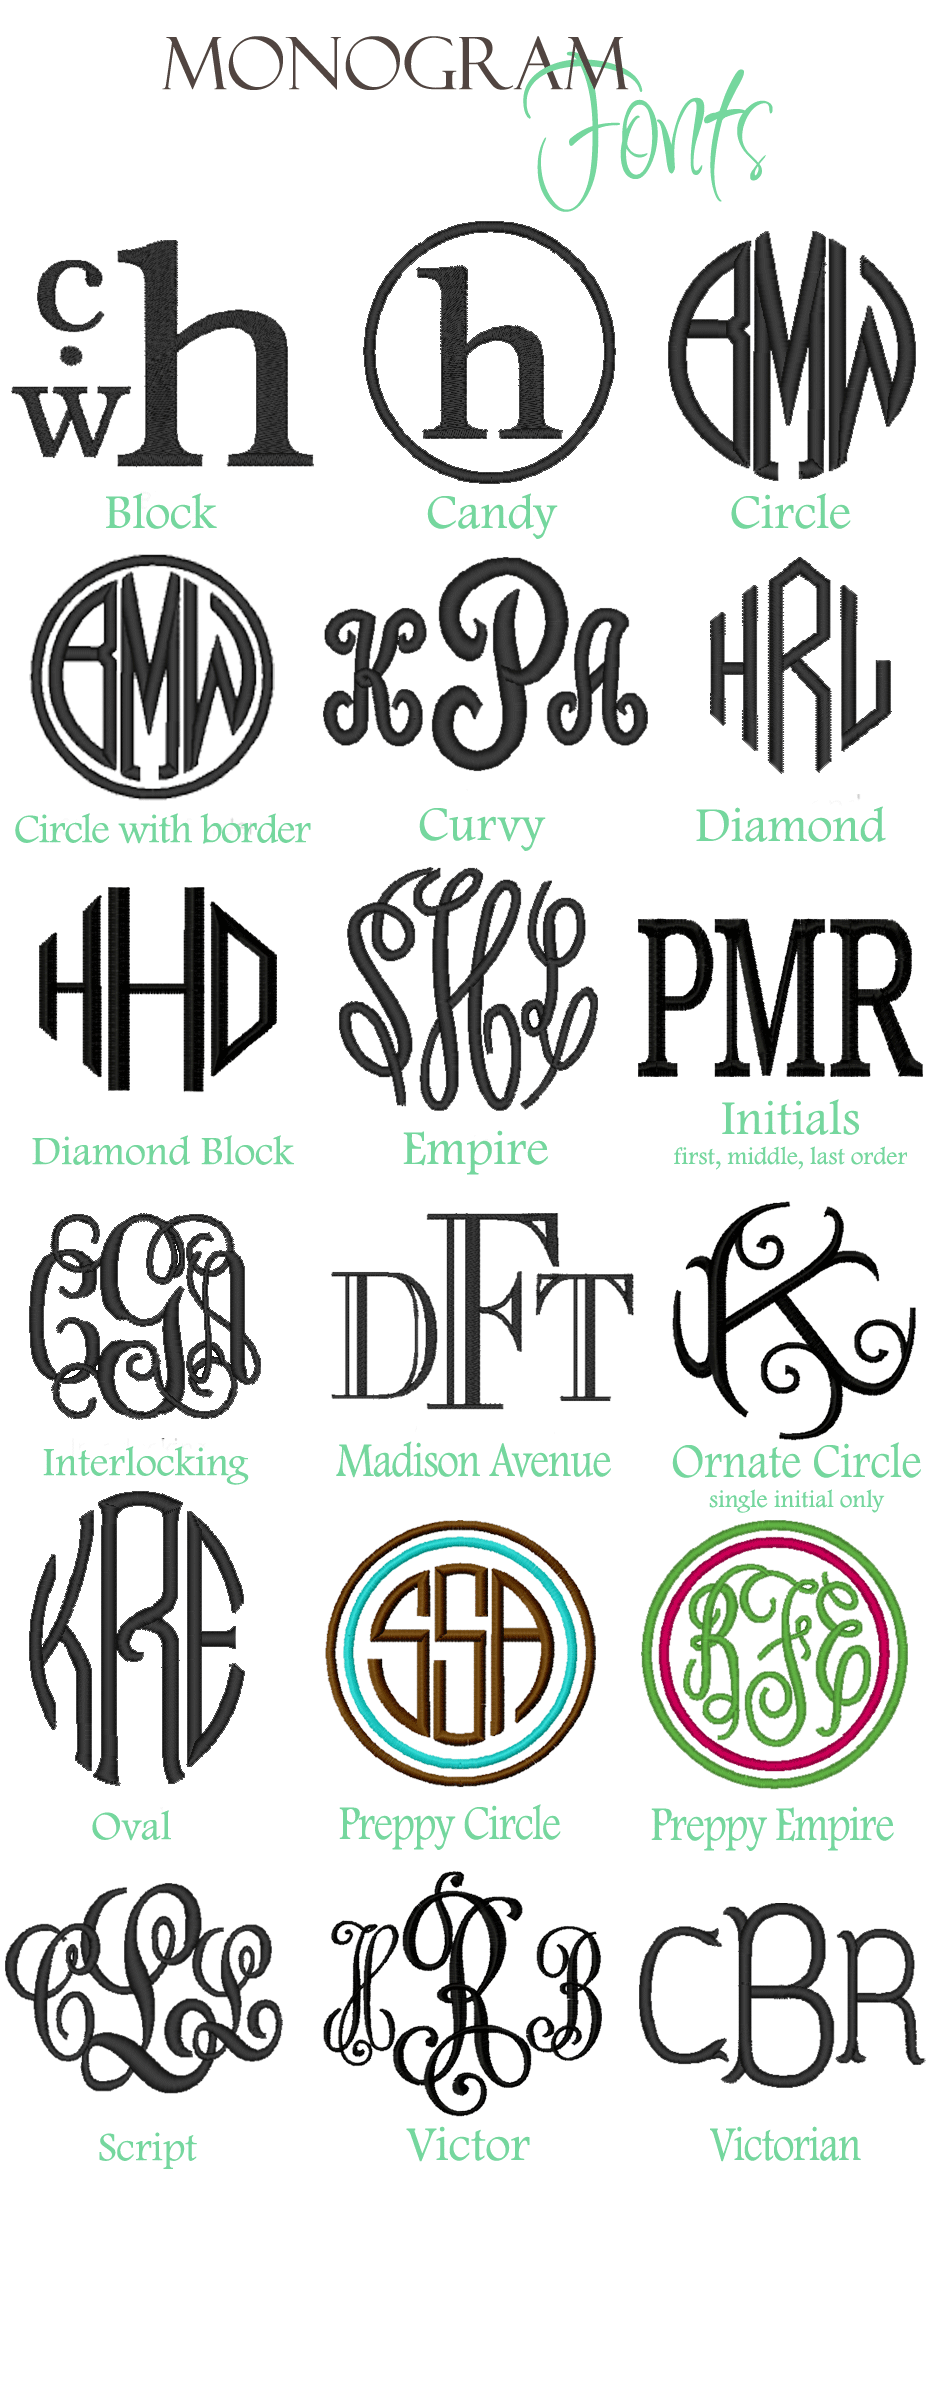 17 Cricut Monogram Fonts Images